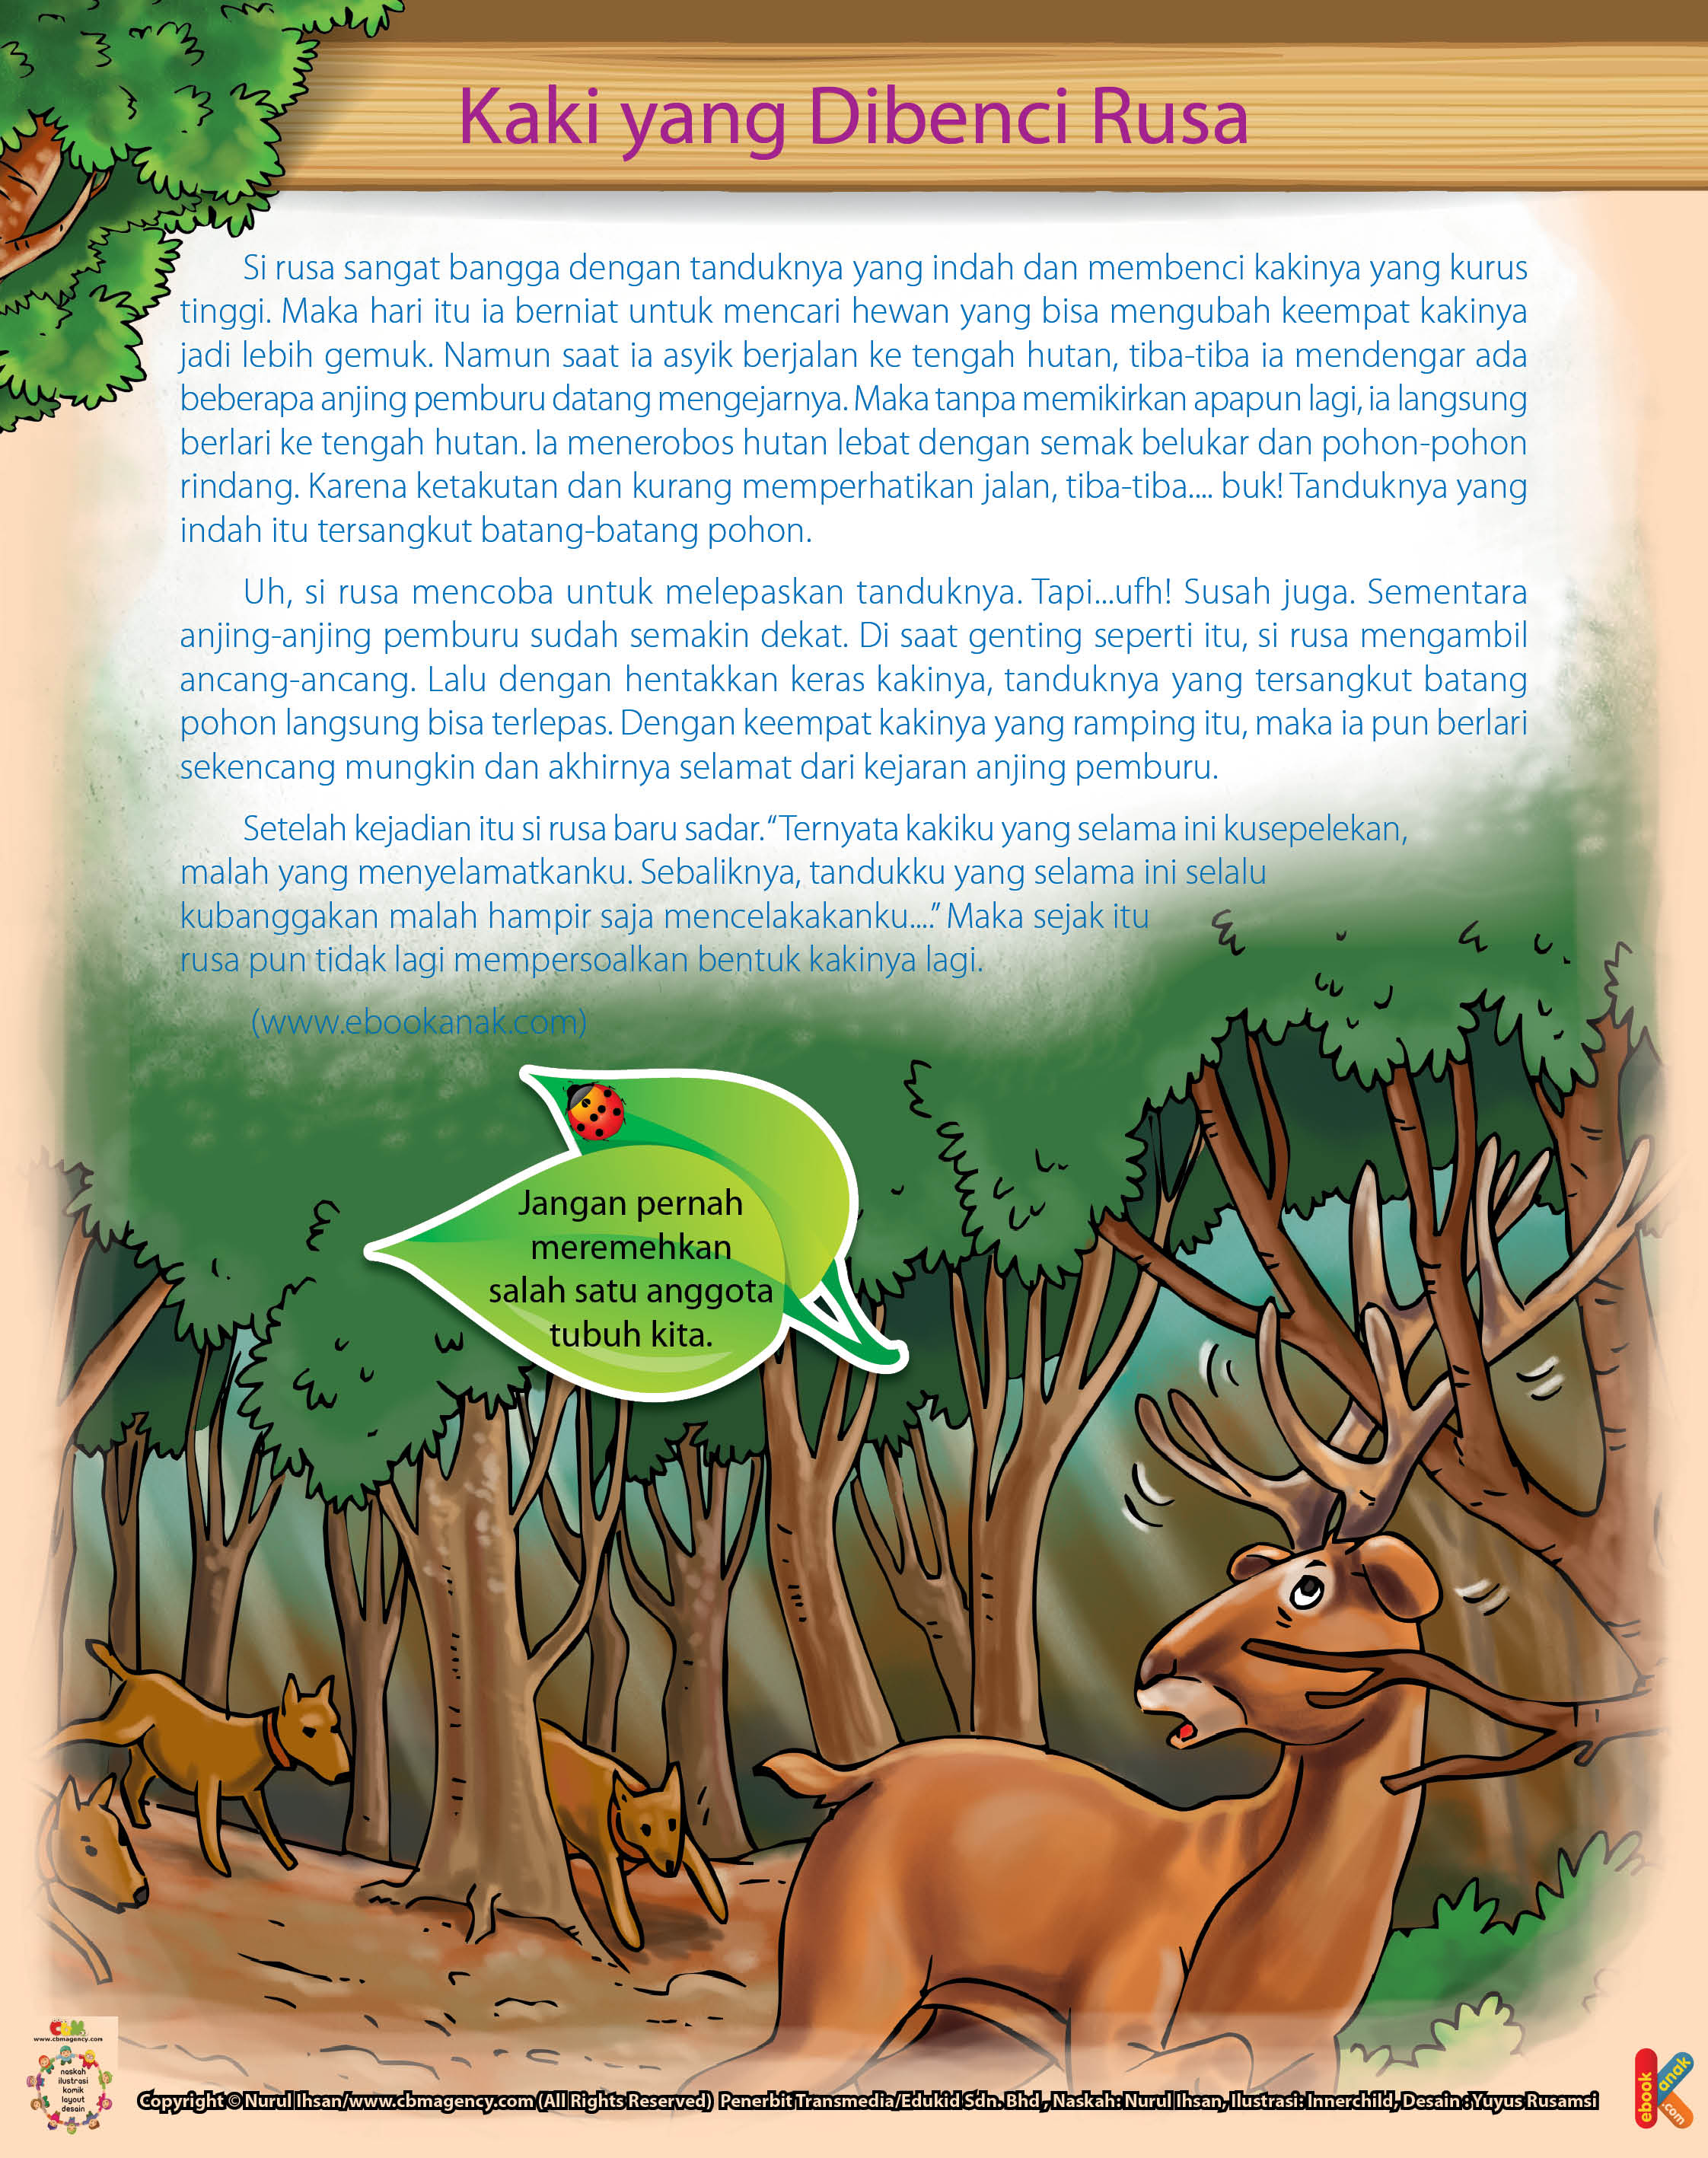 Sang rusa langsung berlari sekencang mungkin ke tengah hutan untuk menyelamatkan diri.